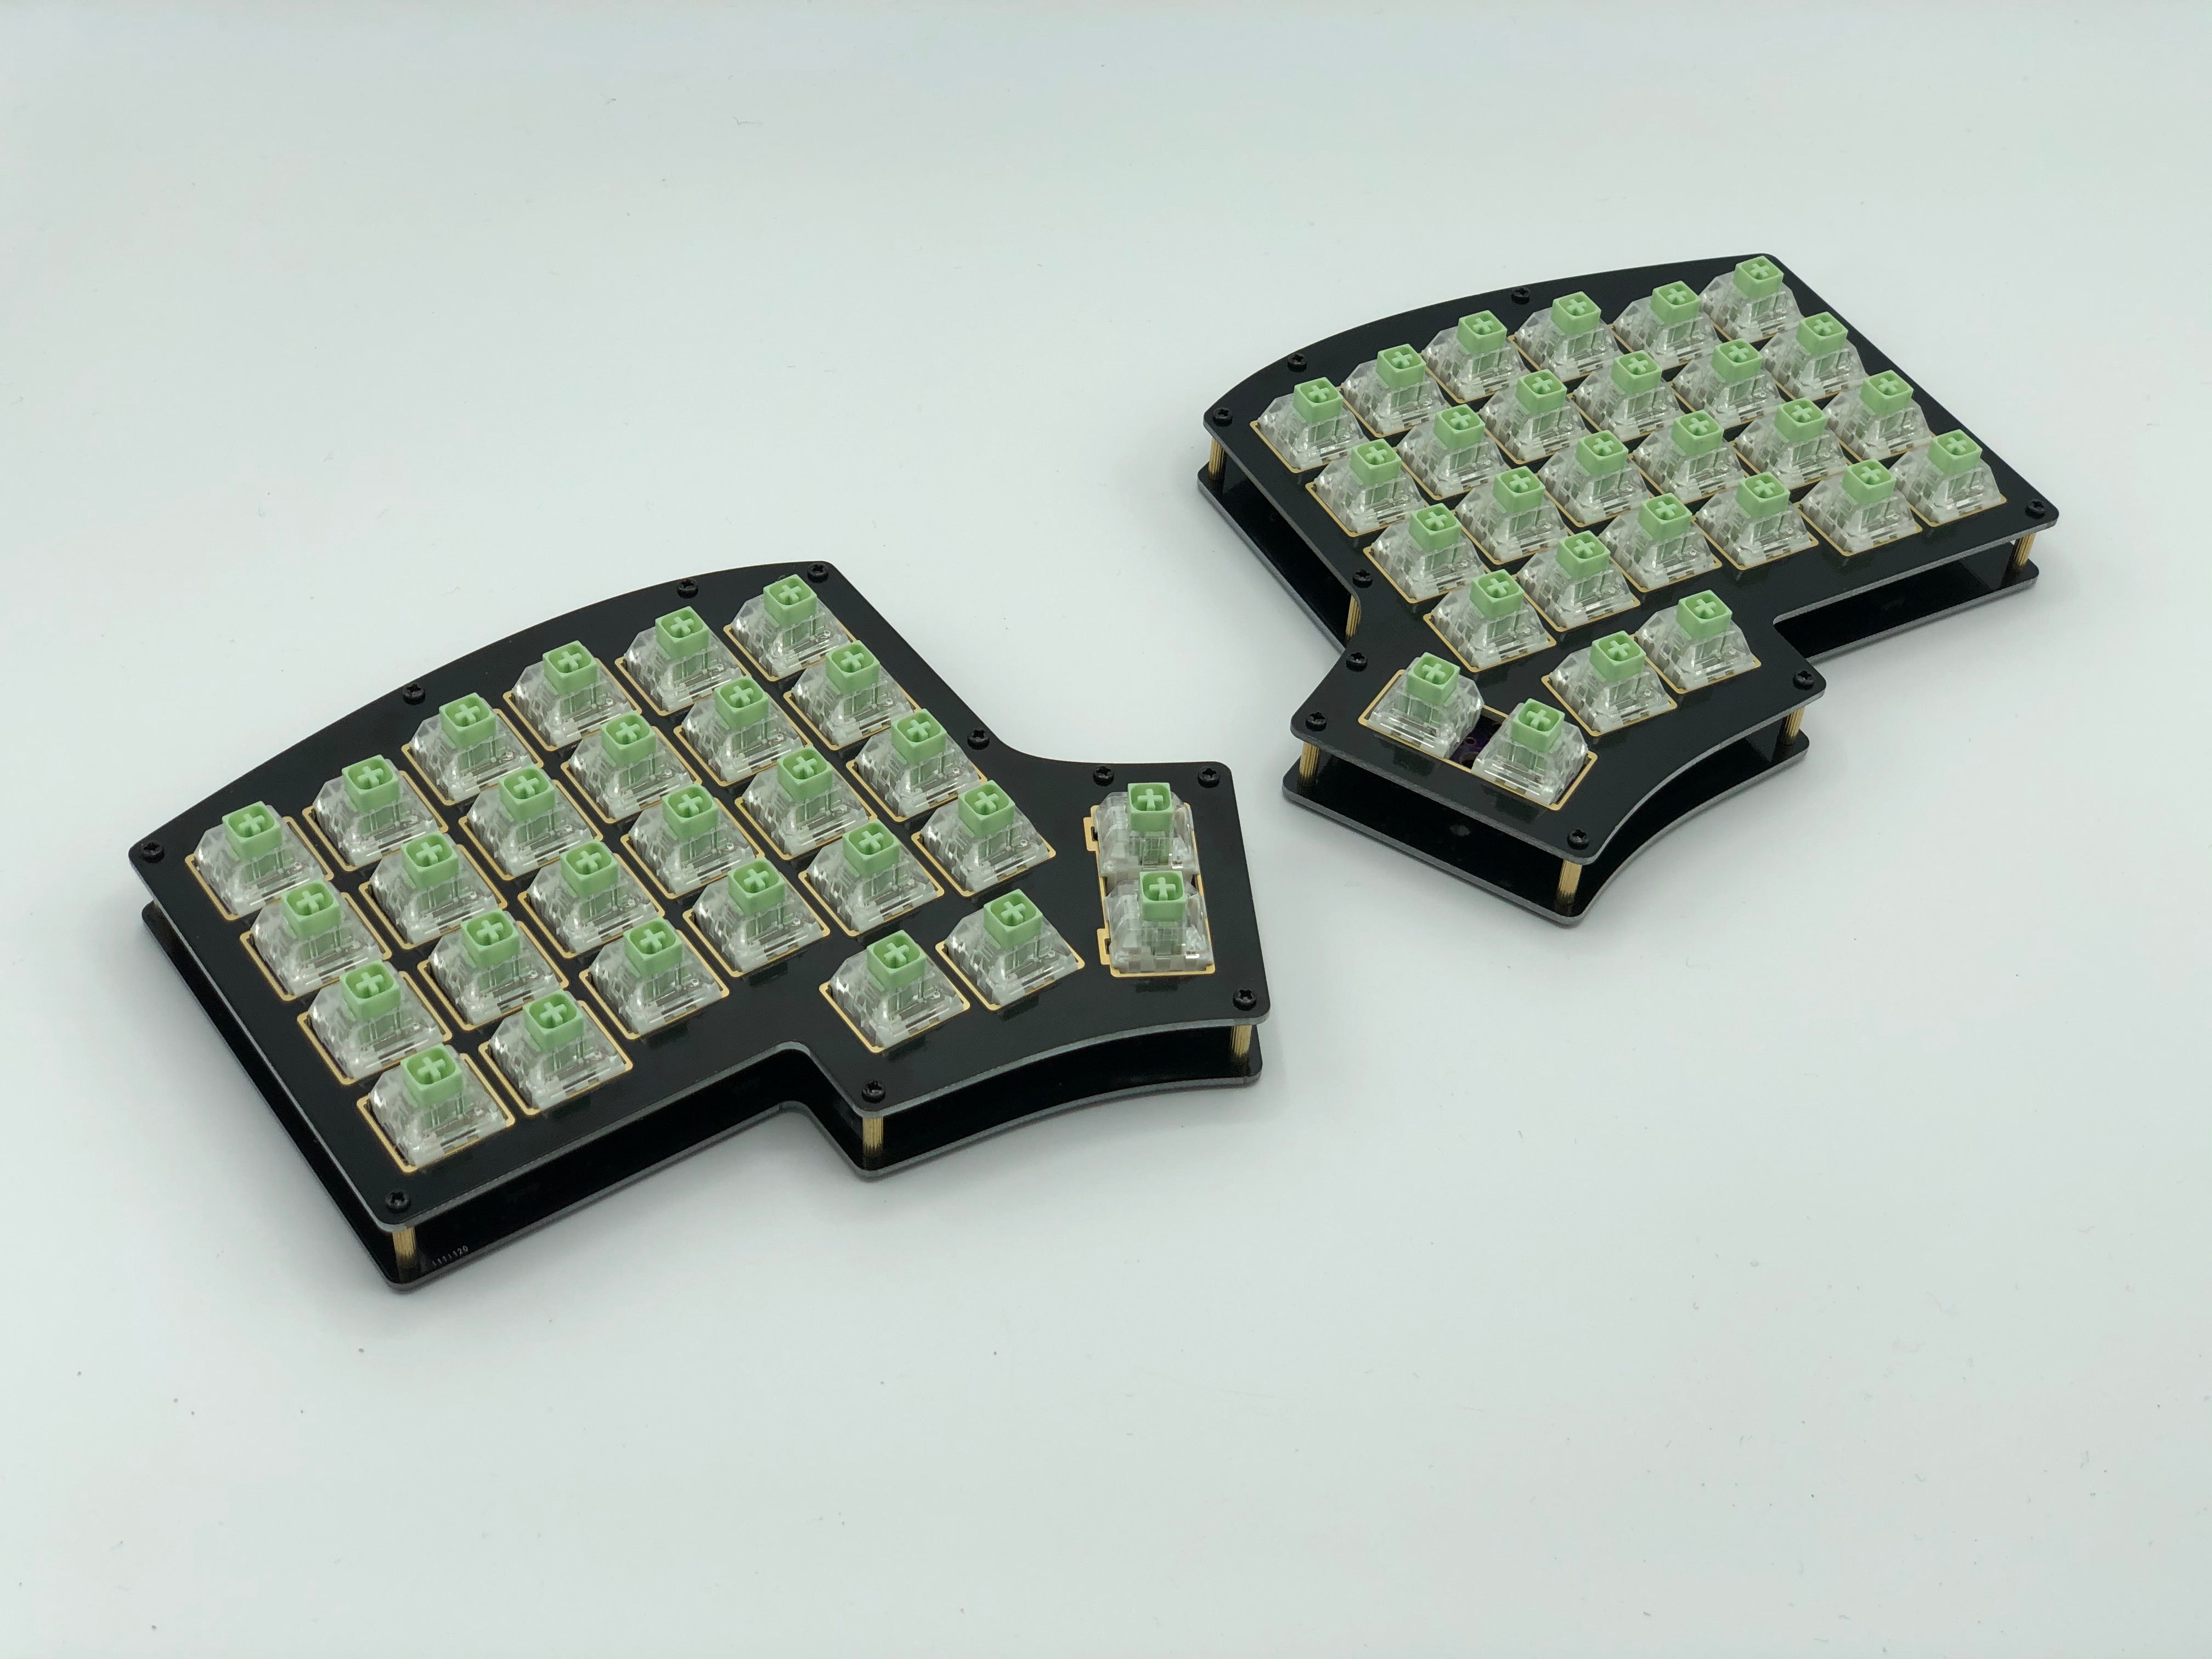 Iris Rev. 8 Keyboard - Hotswap PCBs for Split Ergonomic Keyboard 